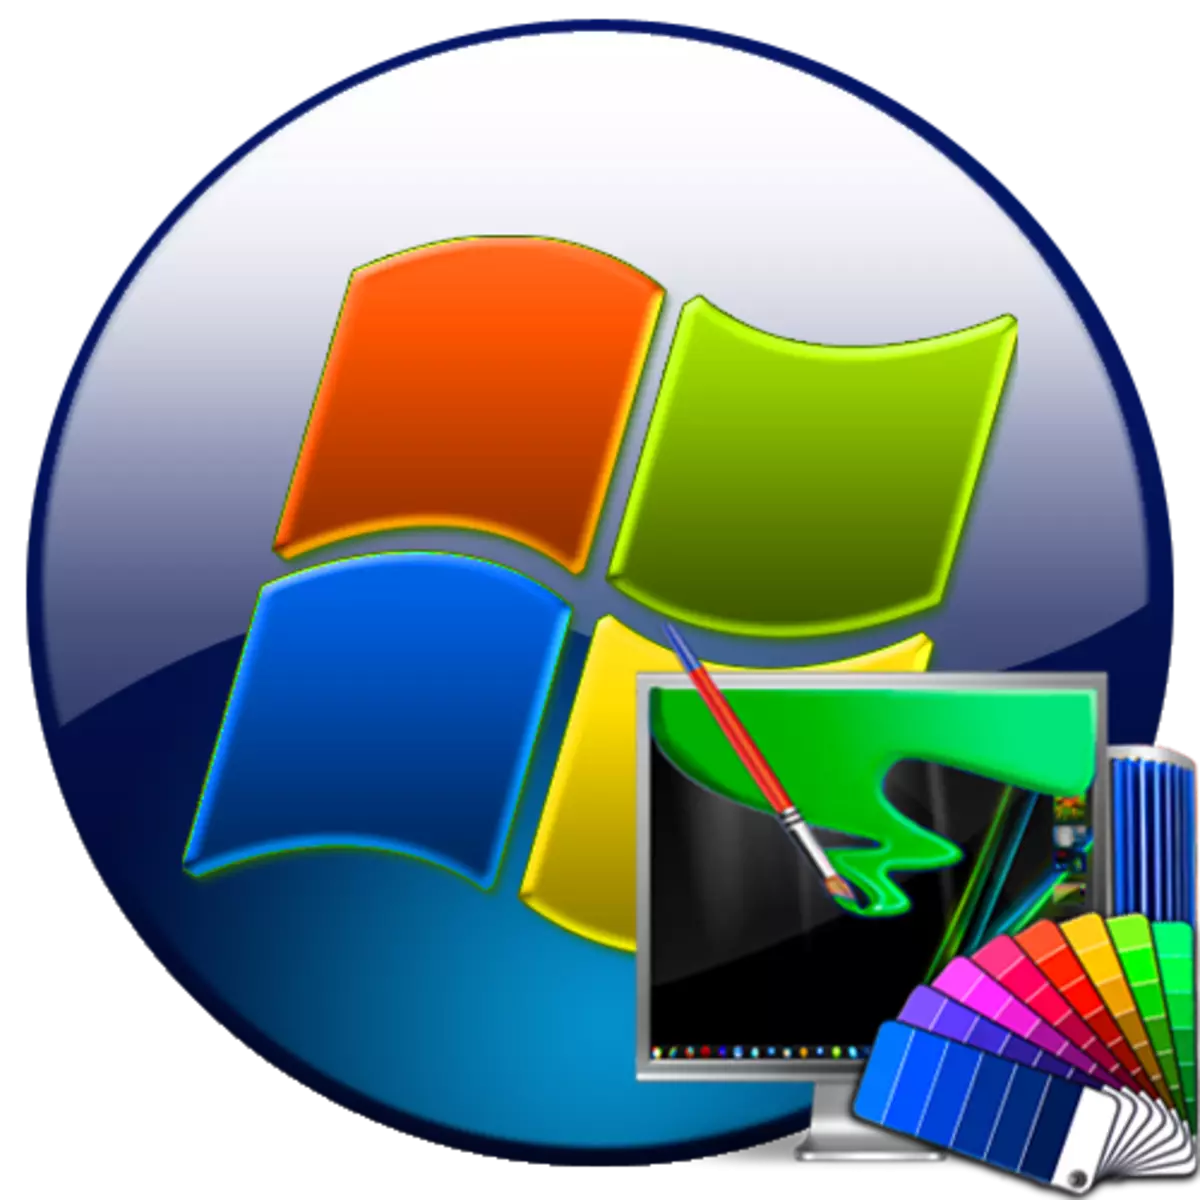 Windows 7 dekorazio gaiak